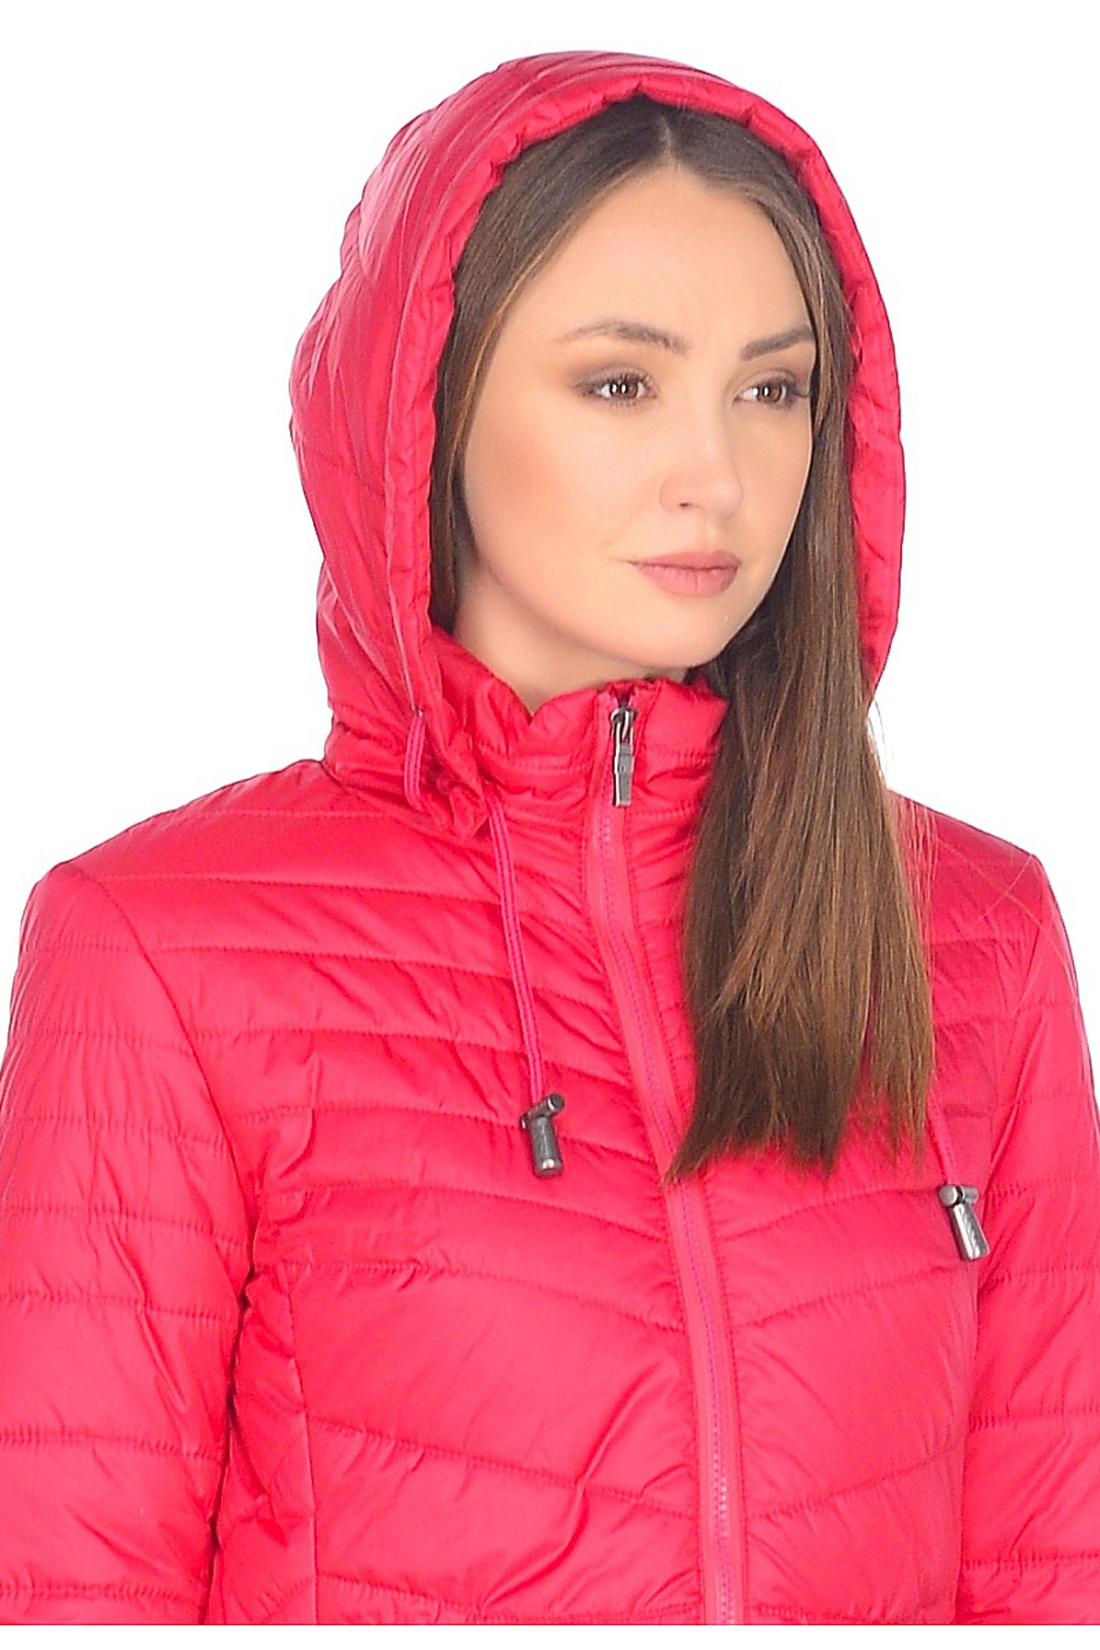 Приталенная куртка с капюшоном (арт. baon B038202), размер L, цвет красный Приталенная куртка с капюшоном (арт. baon B038202) - фото 3